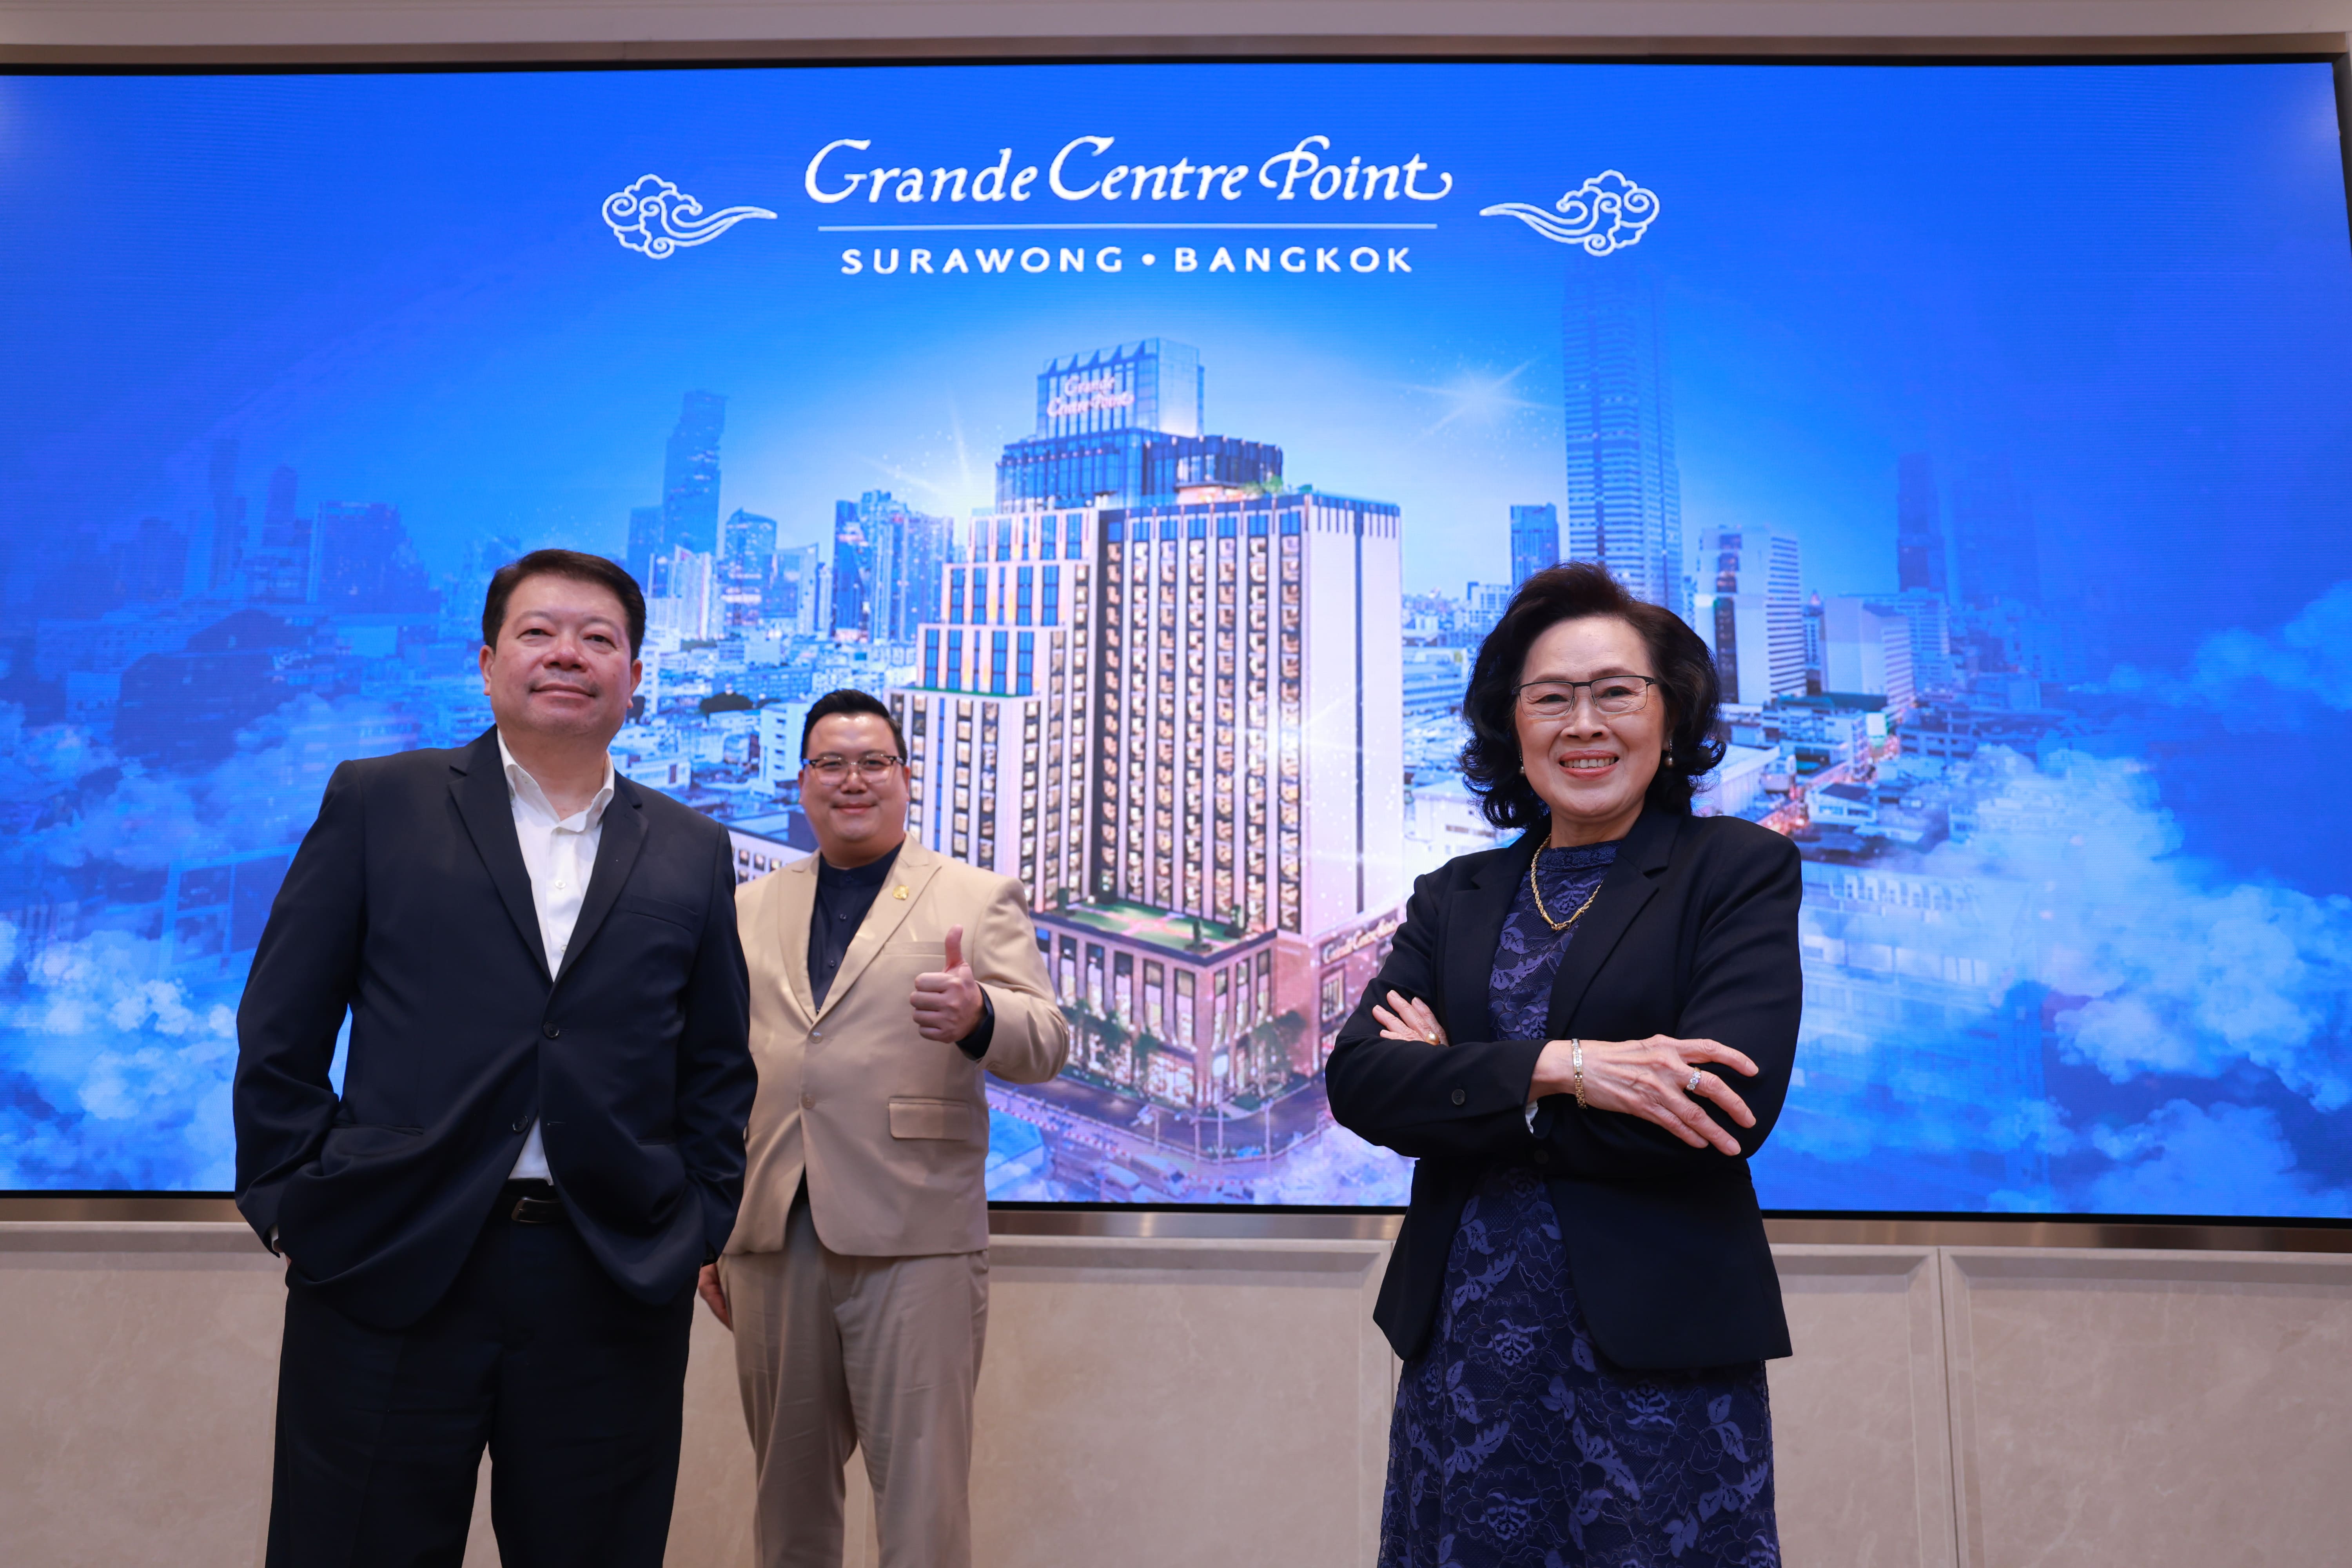 โรงแรม แกรนด์ เซนเตอร์ พอยต์ สุรวงศ์ แลนด์มาร์คแห่งใหม่ย่านการค้าใจกลางกรุงเทพ เปิดตัวอย่างยิ่งใหญ่ 25 พฤศจิกายนนี้